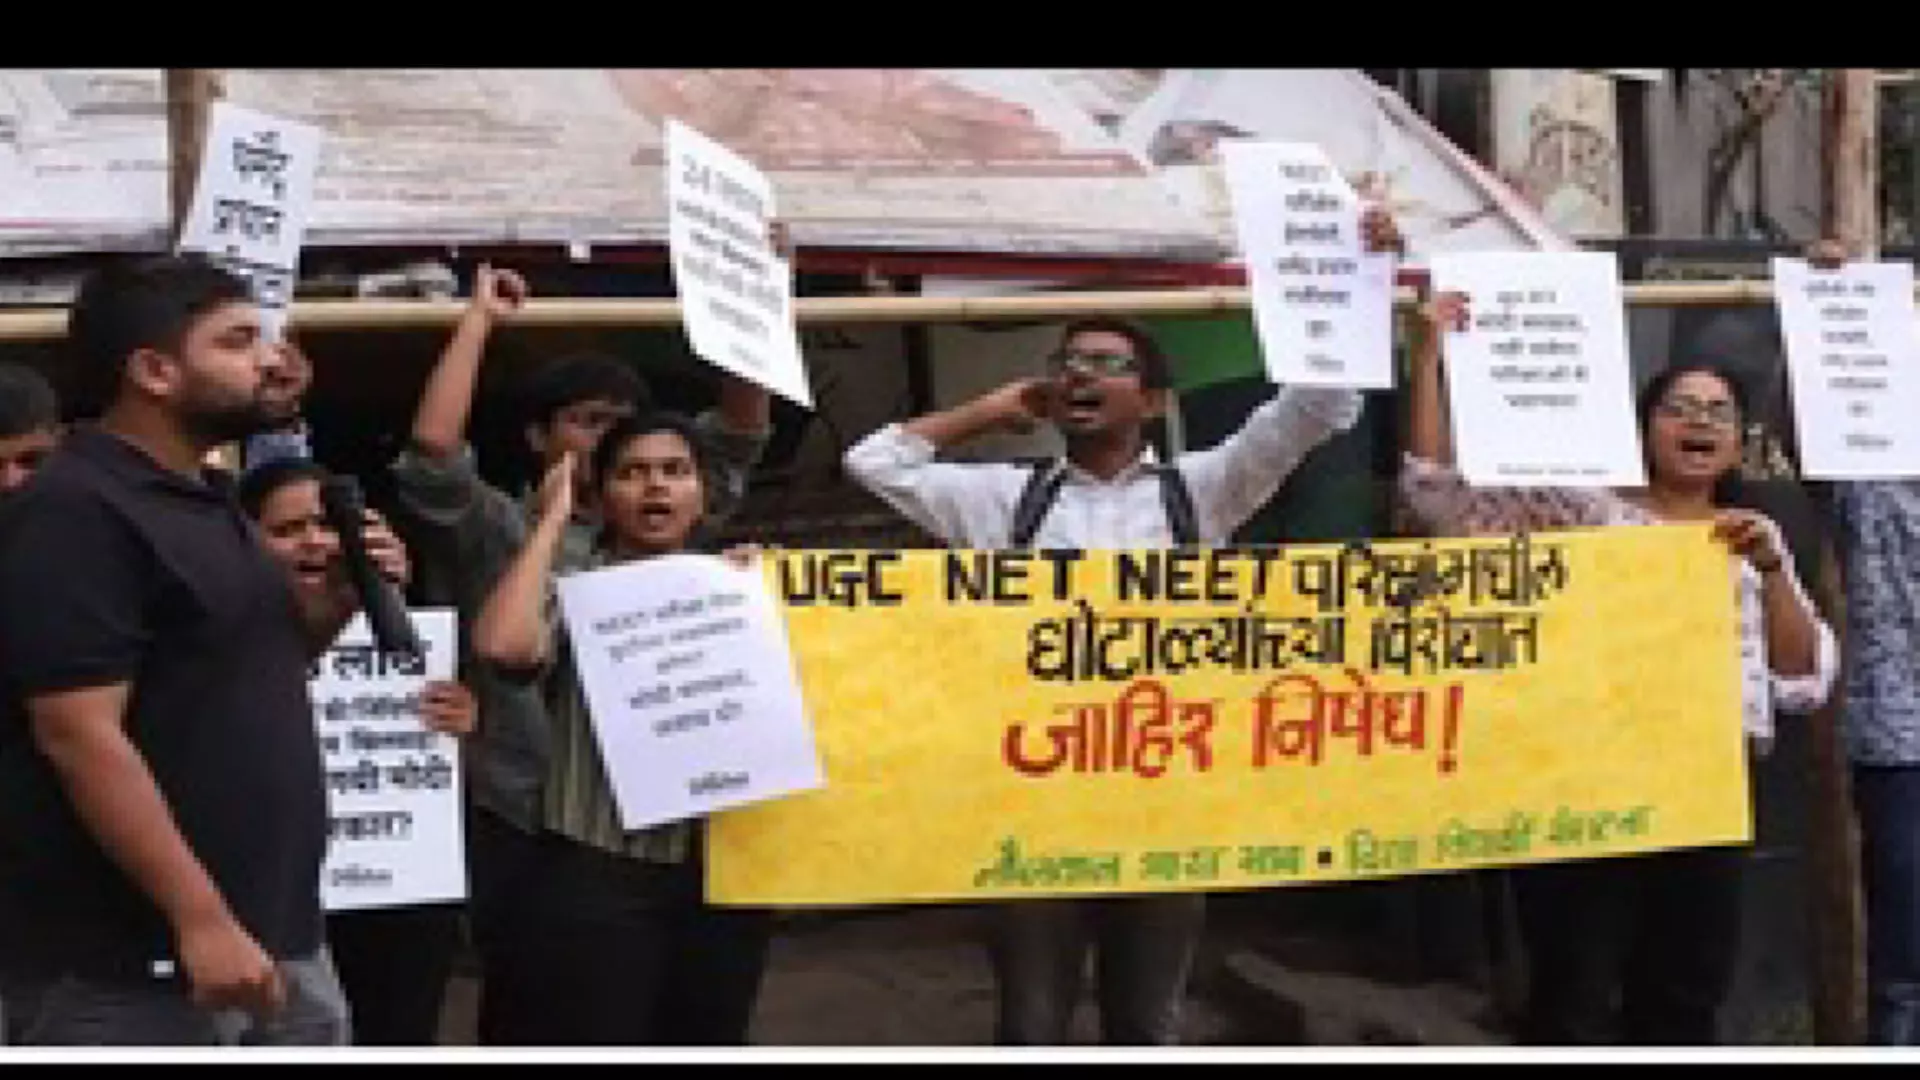 IIT Madras: NEET परीक्षा में कोई बड़े पैमाने पर गड़बड़ी नहीं हुई केंद्र ने सुप्रीम कोर्ट को बताया